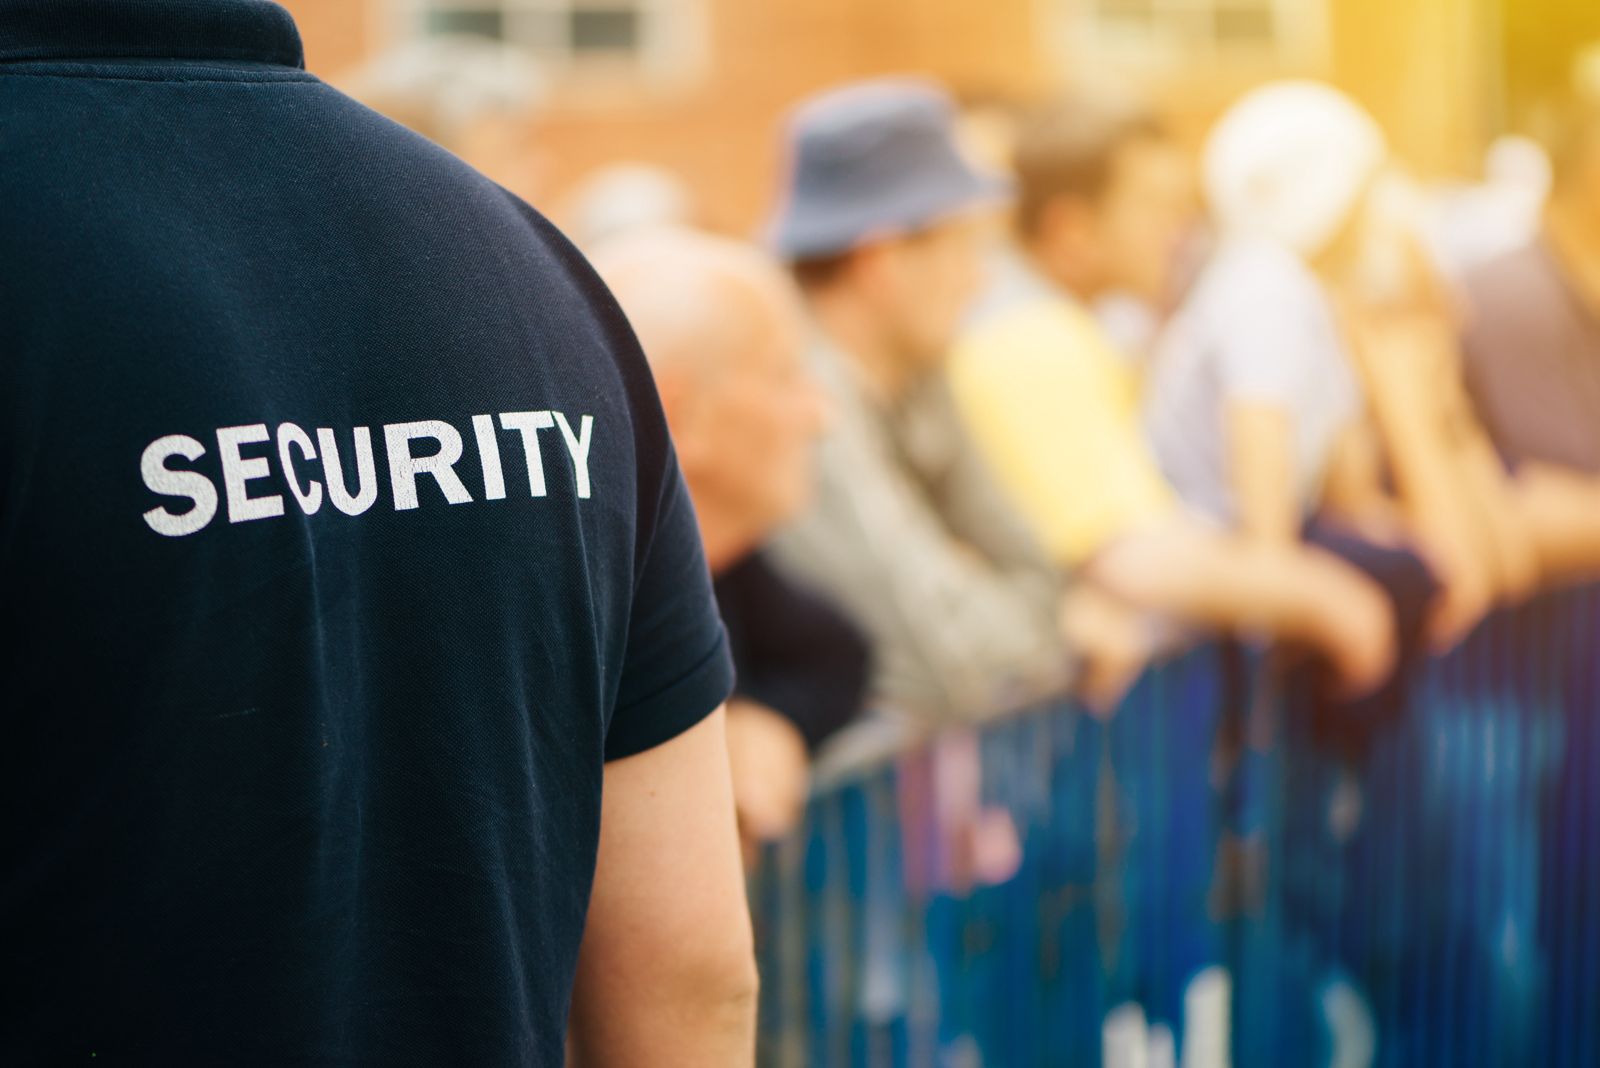 Ce măsuri de securitate sunt recomandate pentru evenimentele publice de amploare?